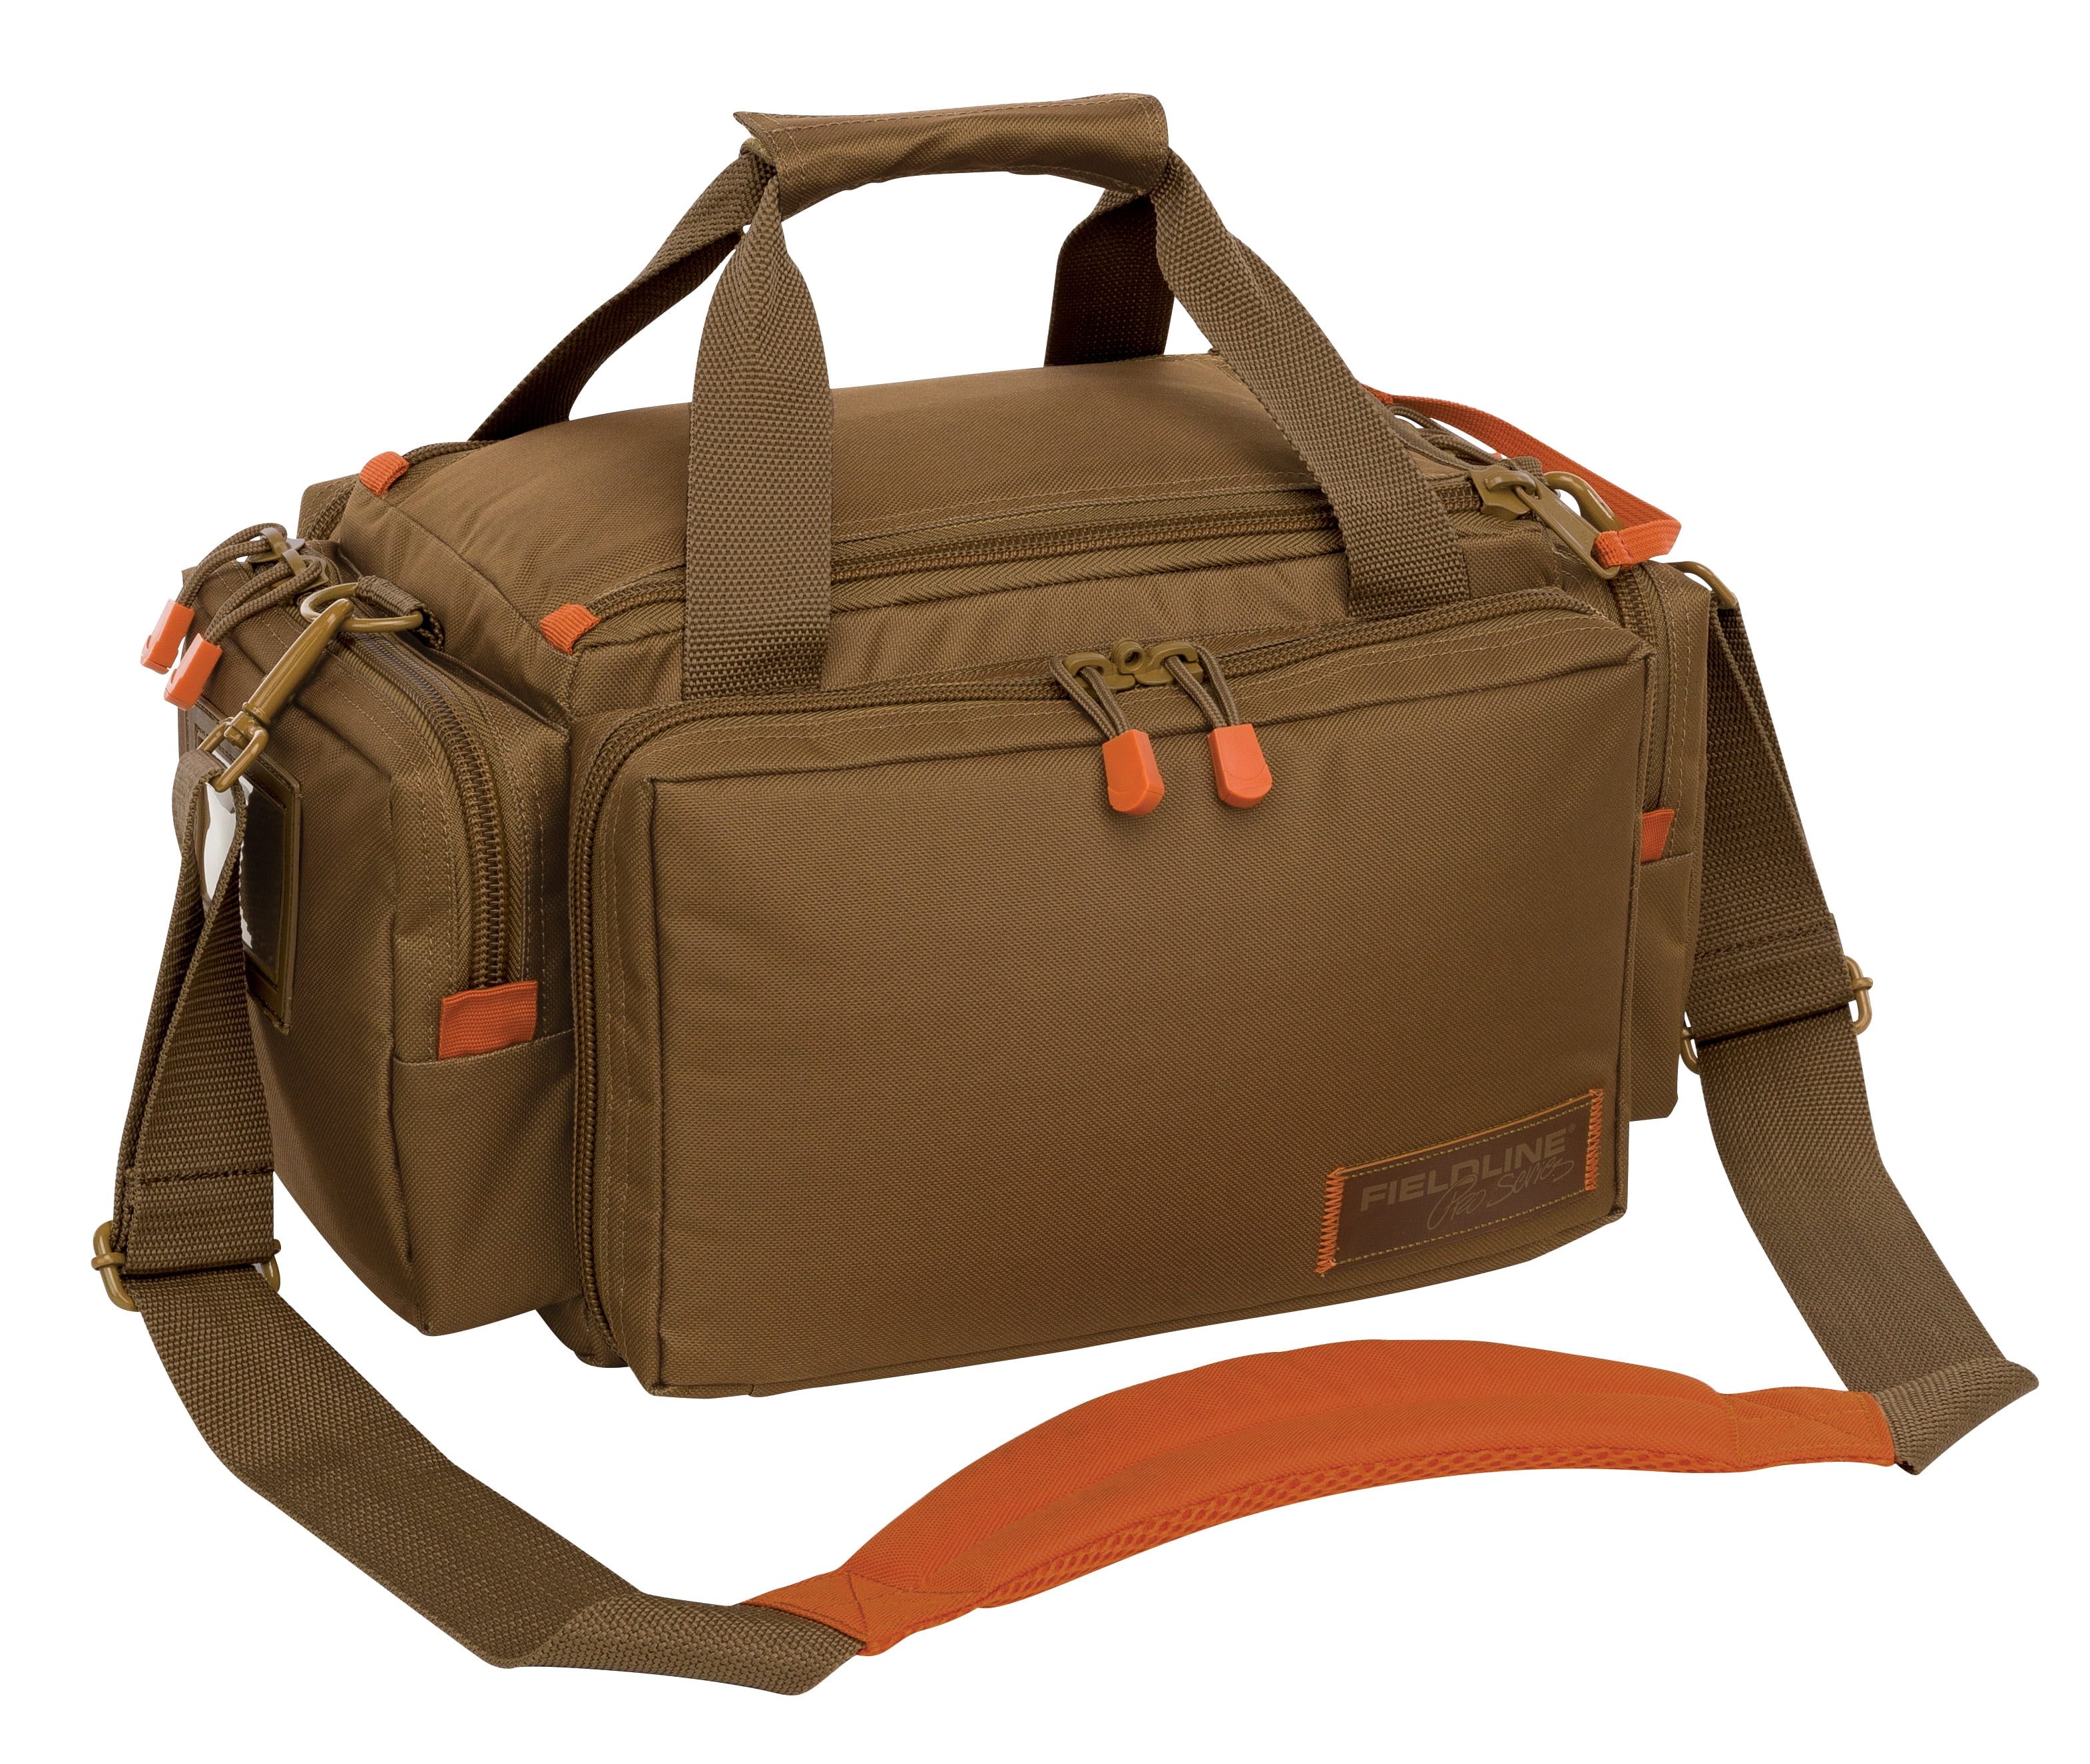 Fieldline Pro Series Deluxe Range Bag, Desert Clay Large, Brown, Ammo Gun Case, 4 Piece